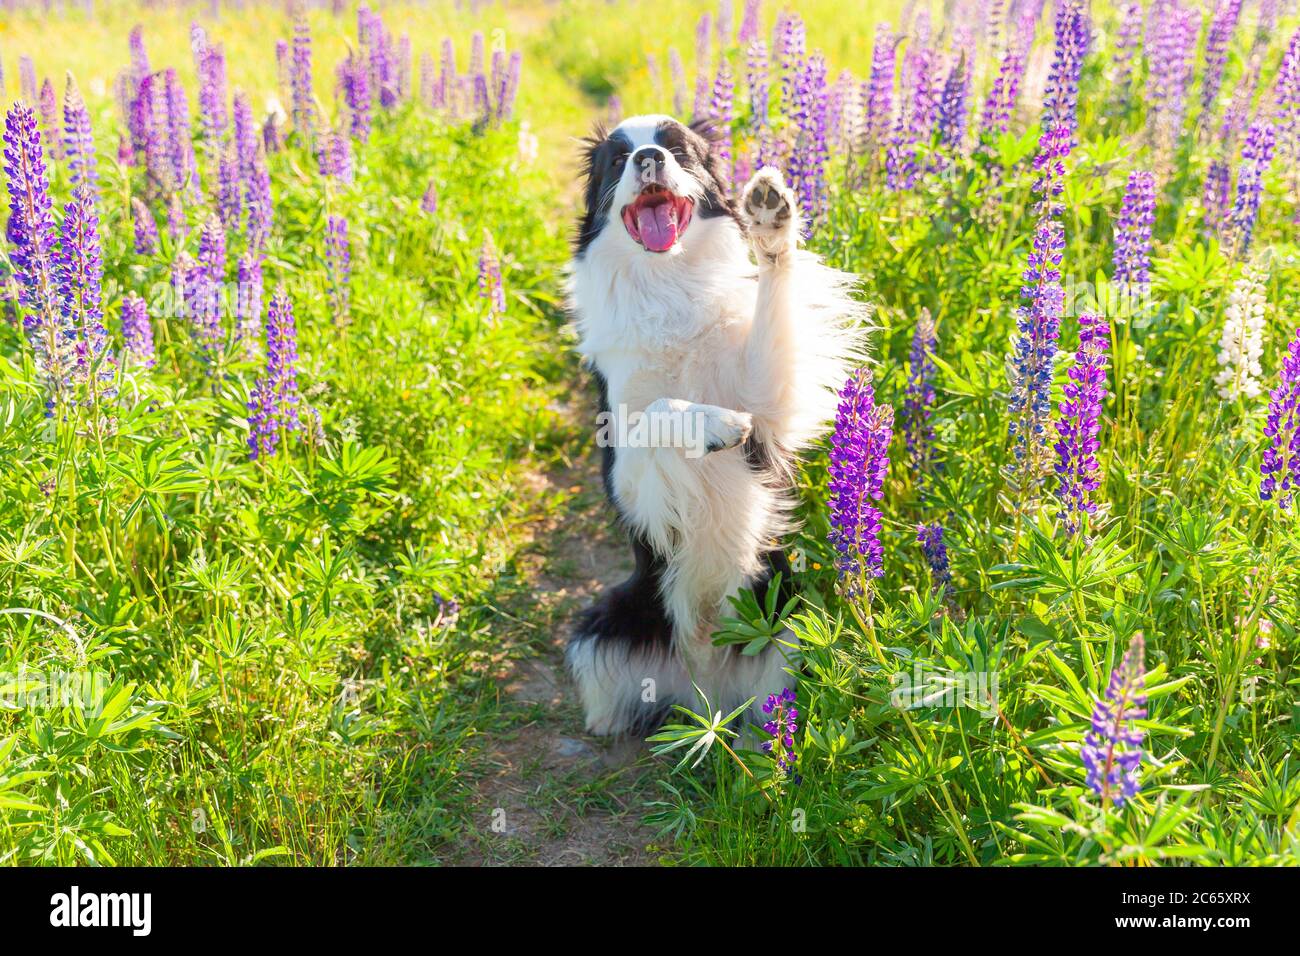 Outdoor-Porträt von niedlichen lächelnden Welpen Grenze Collie sitzt auf Gras violetten Blume Hintergrund. Lustige Gesicht kleinen Hund springen und geben Pfote. Tierpflege und lustige Tiere Leben Konzept Stockfoto